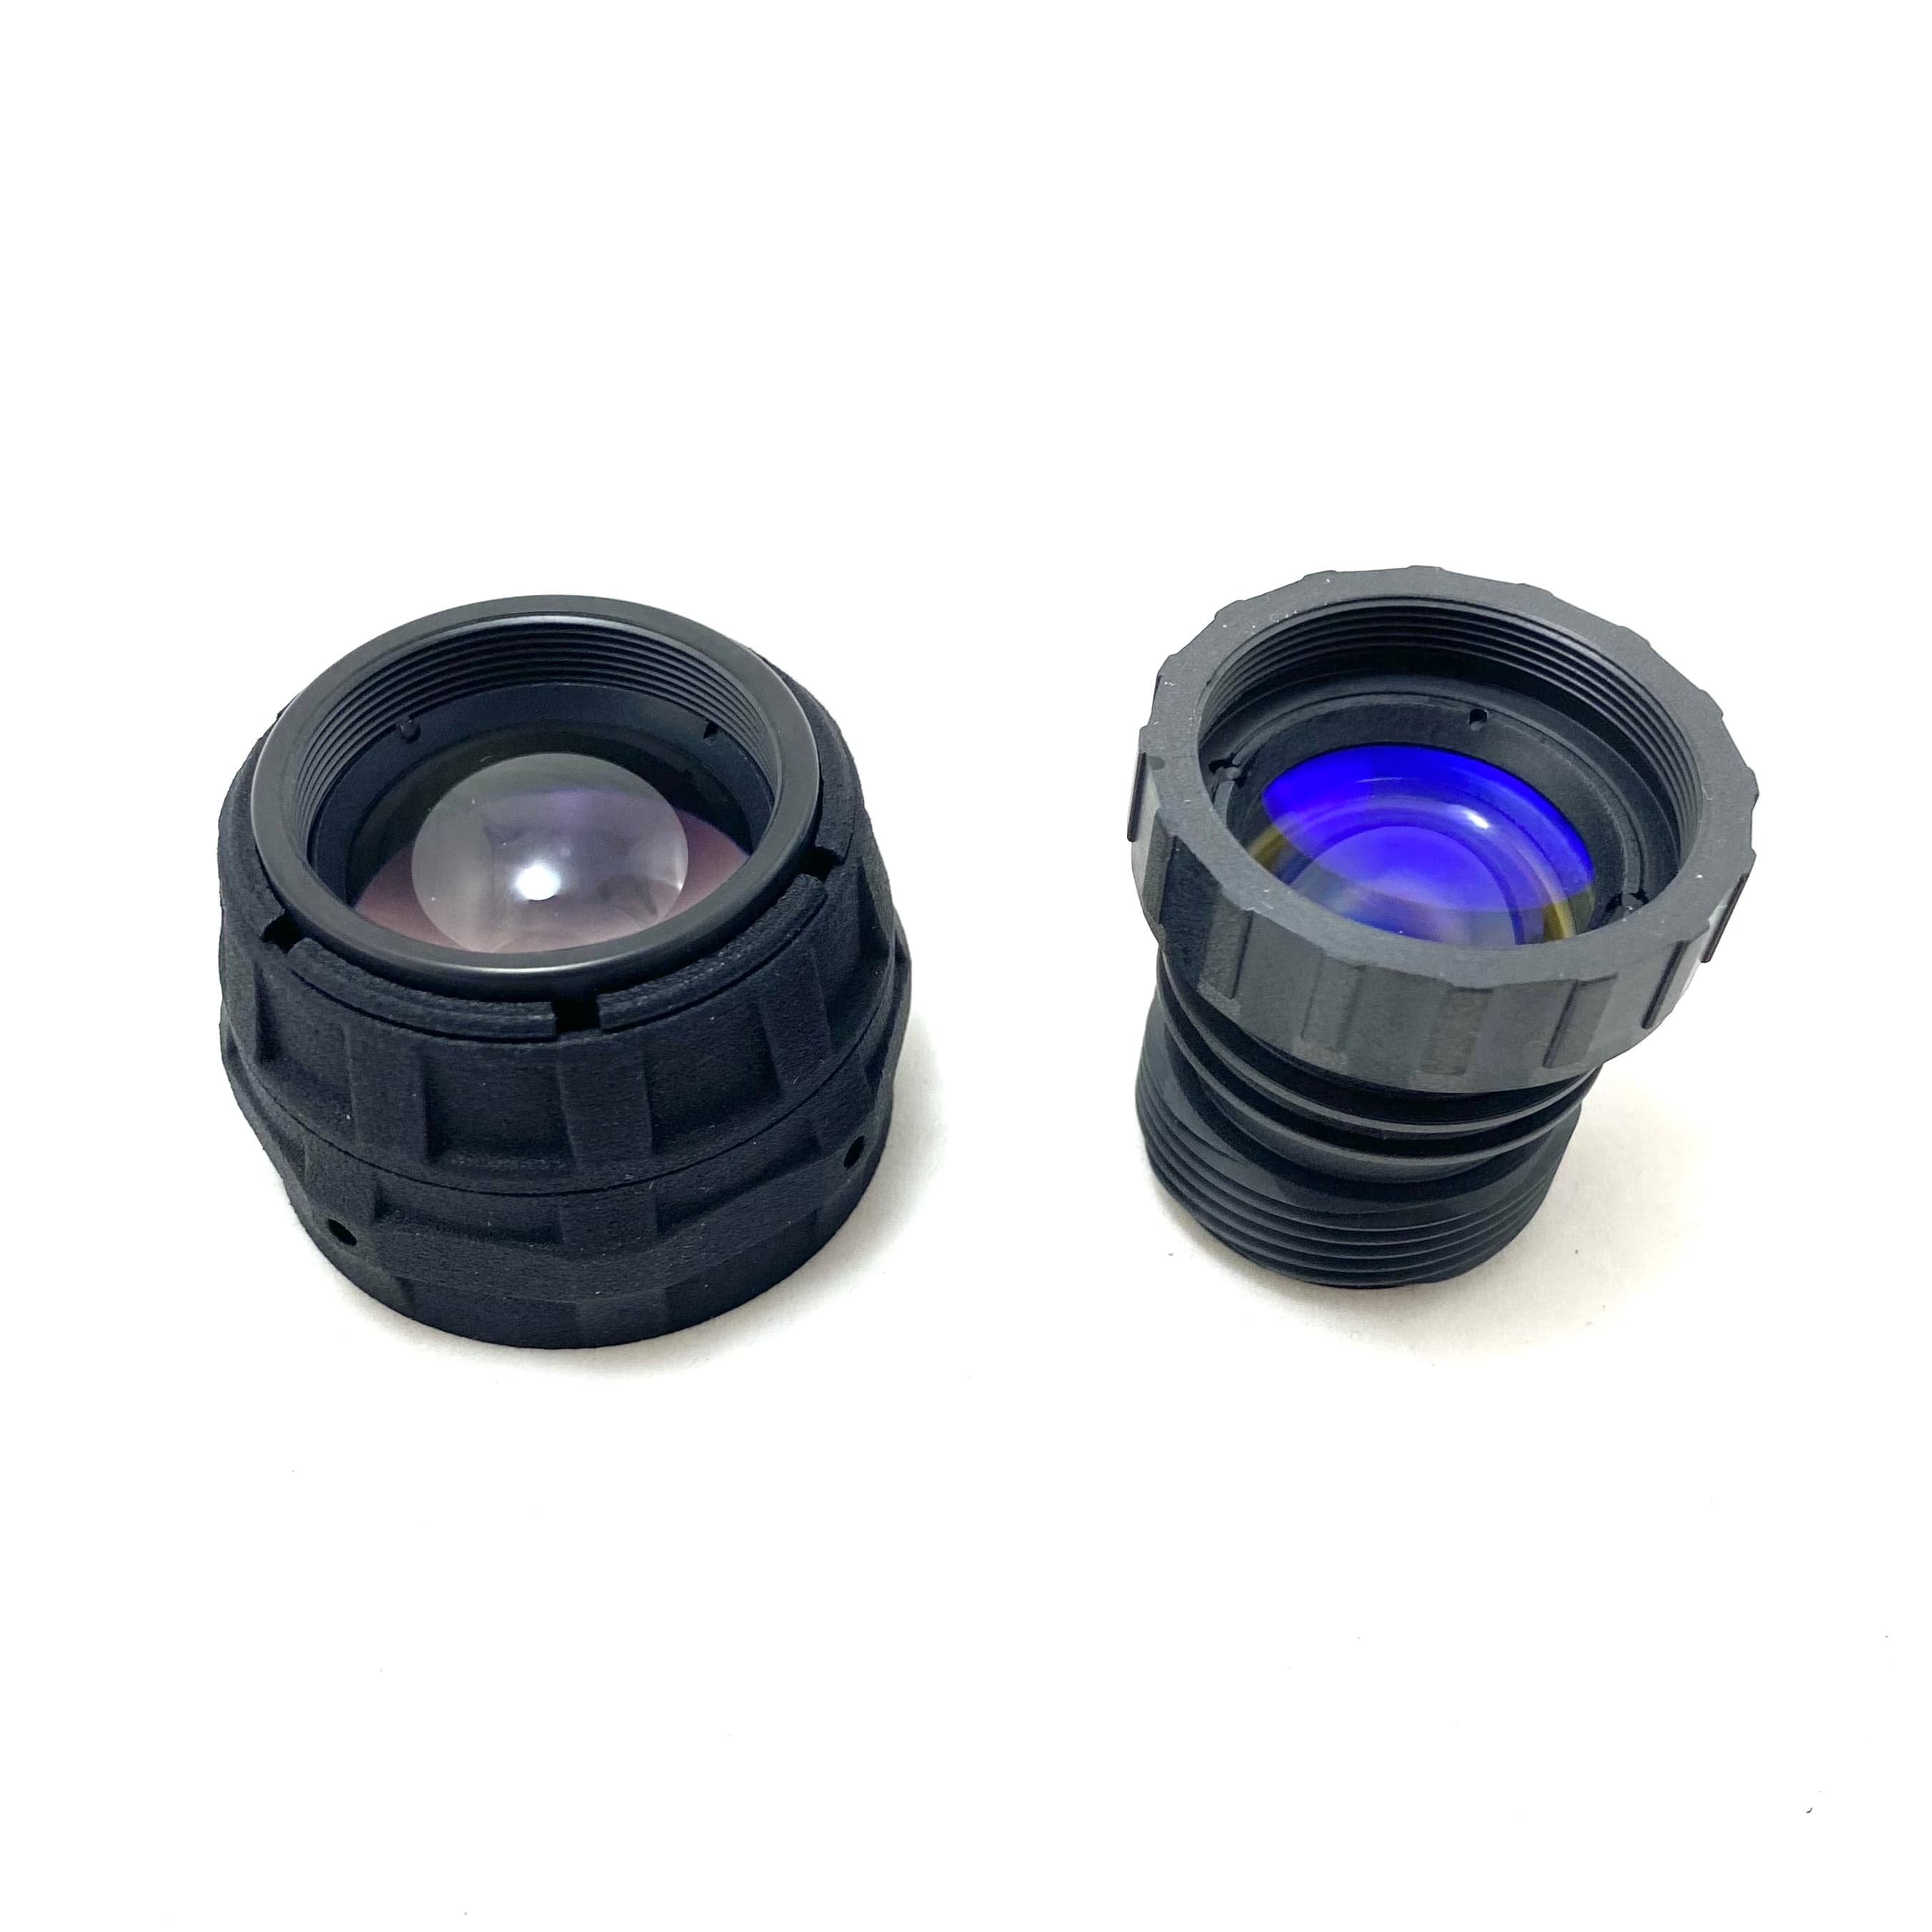 RPO 3.0 Lens Kit